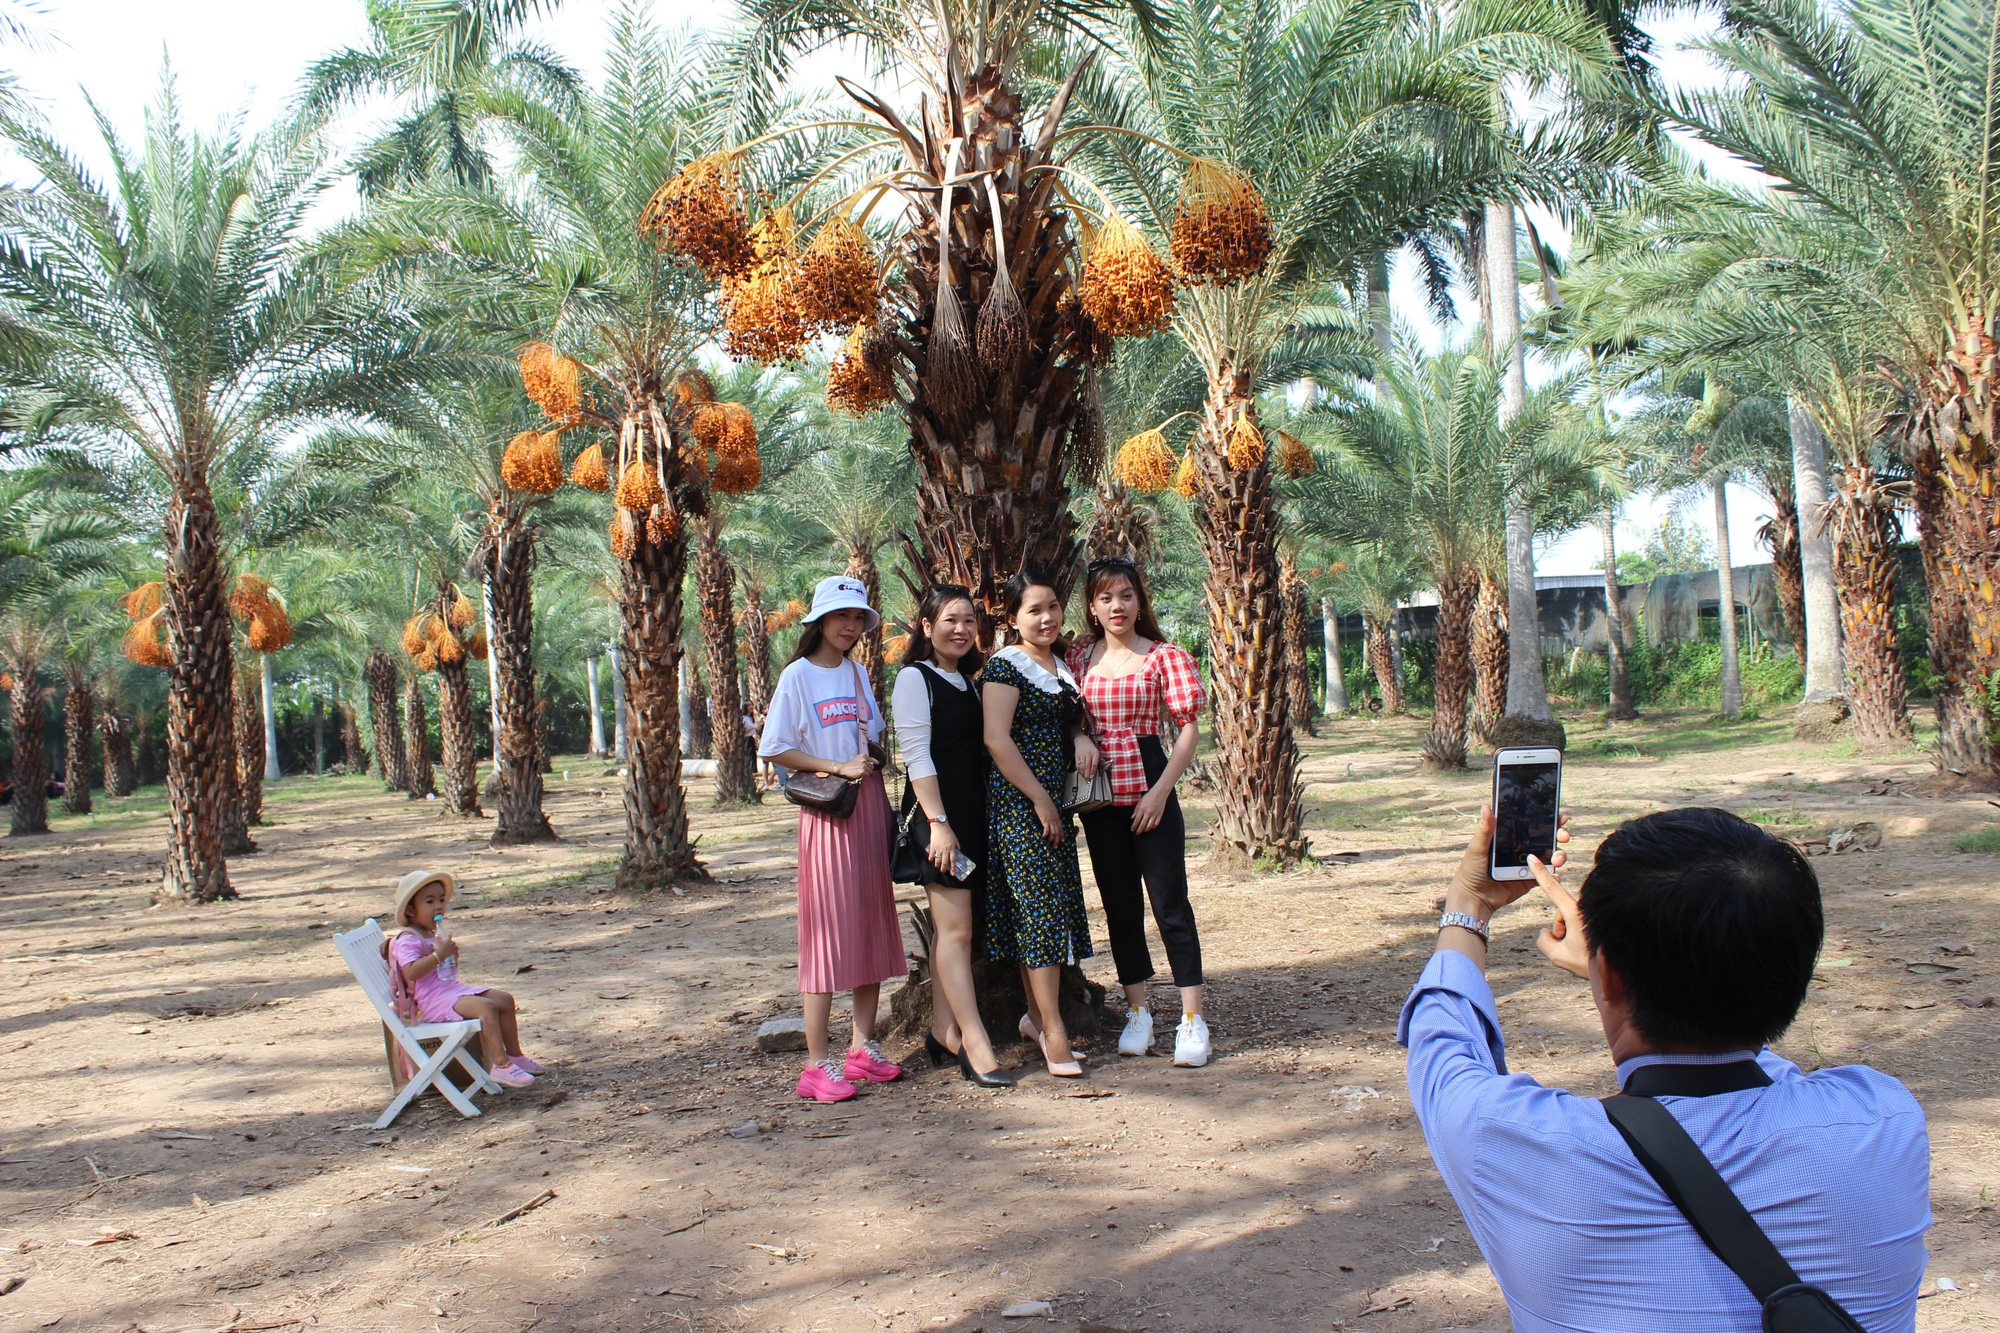 Date palm garden emerges as new photo hotspot in Vietnam’s Mekong Delta